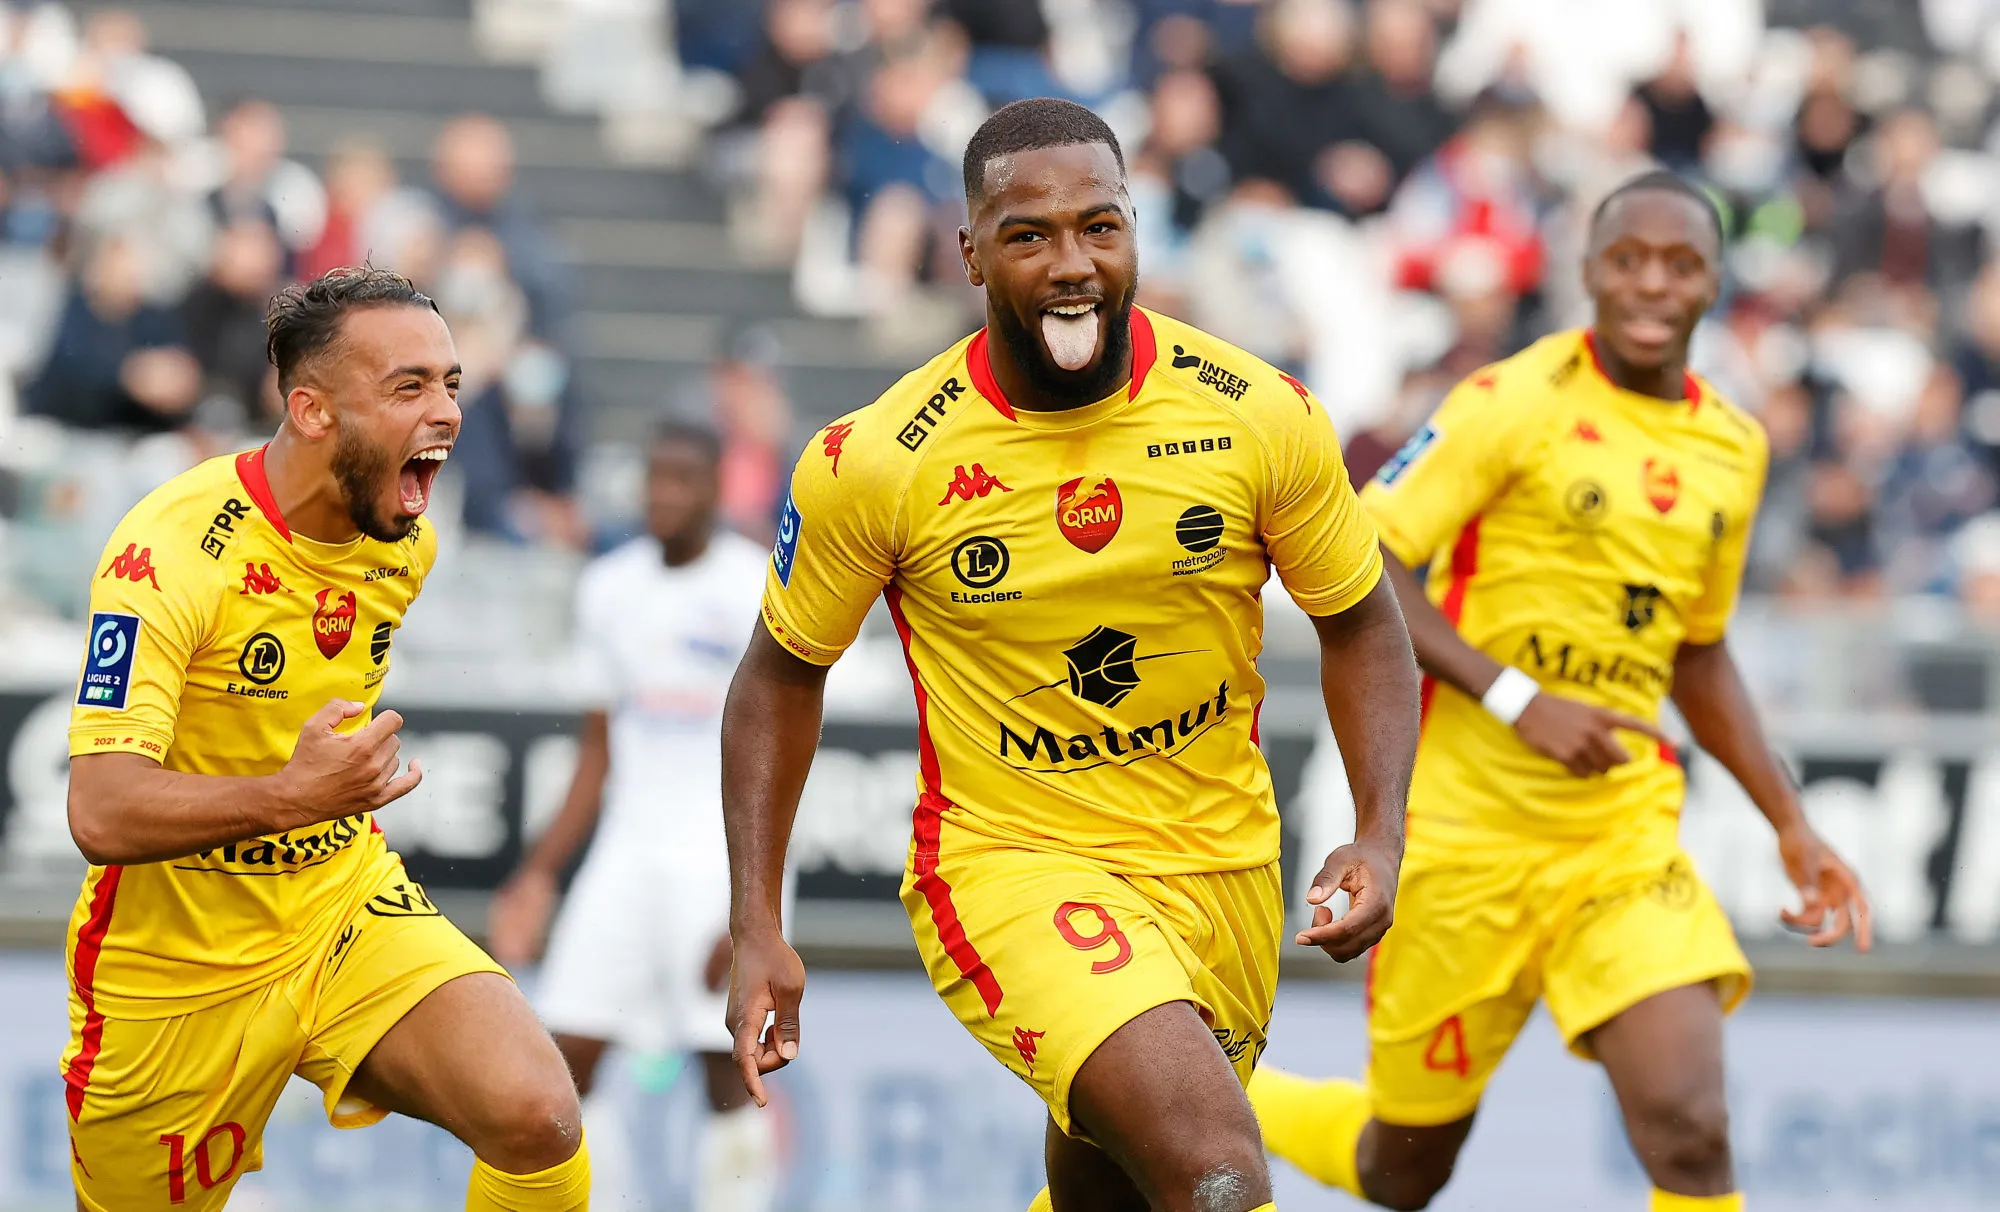 Pronostic Quevilly Rouen Rodez : Analyse, cotes et prono du match de Ligue 2